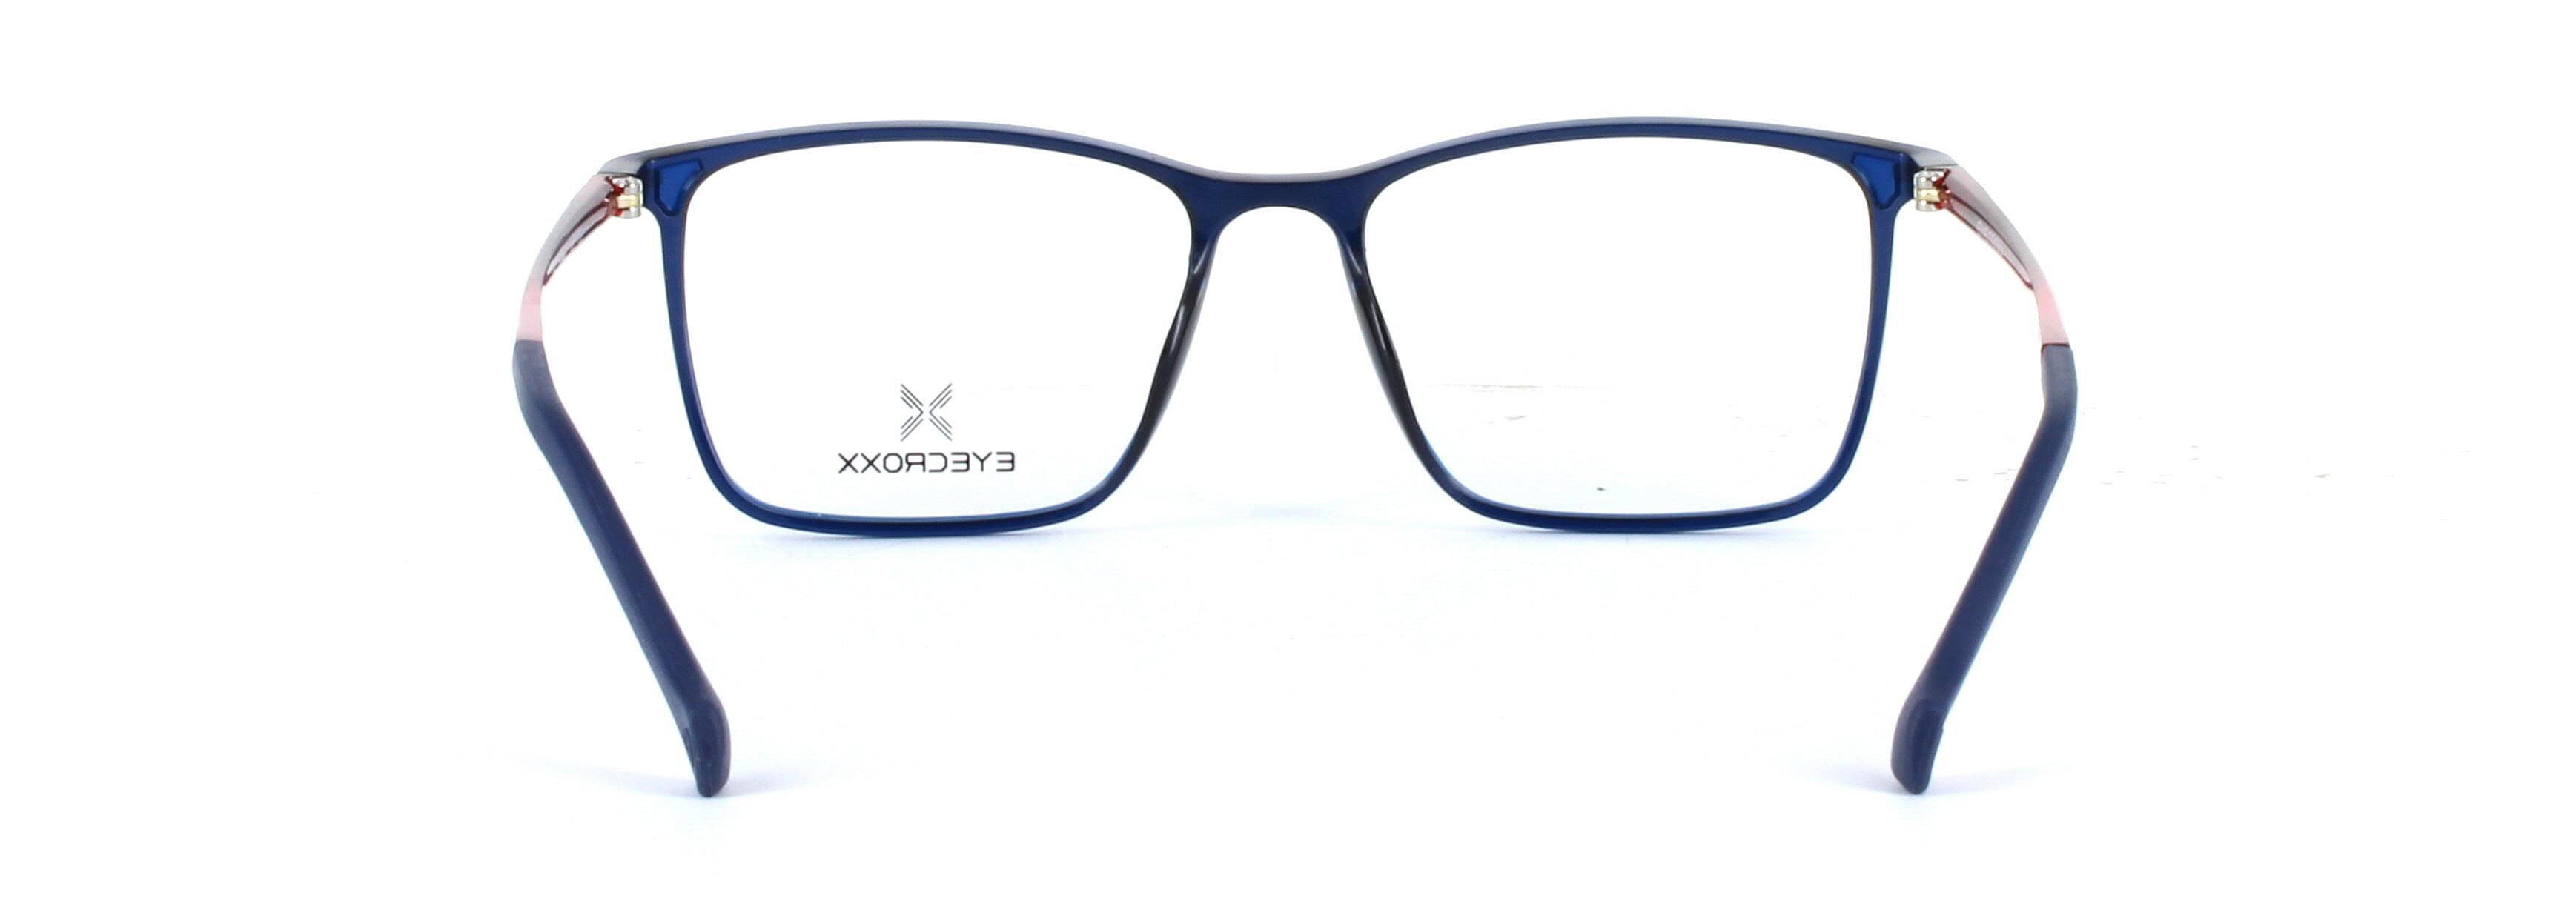 Eyecroxx 588-C3 Blue Full Rim Plastic Glasses - Image View 3